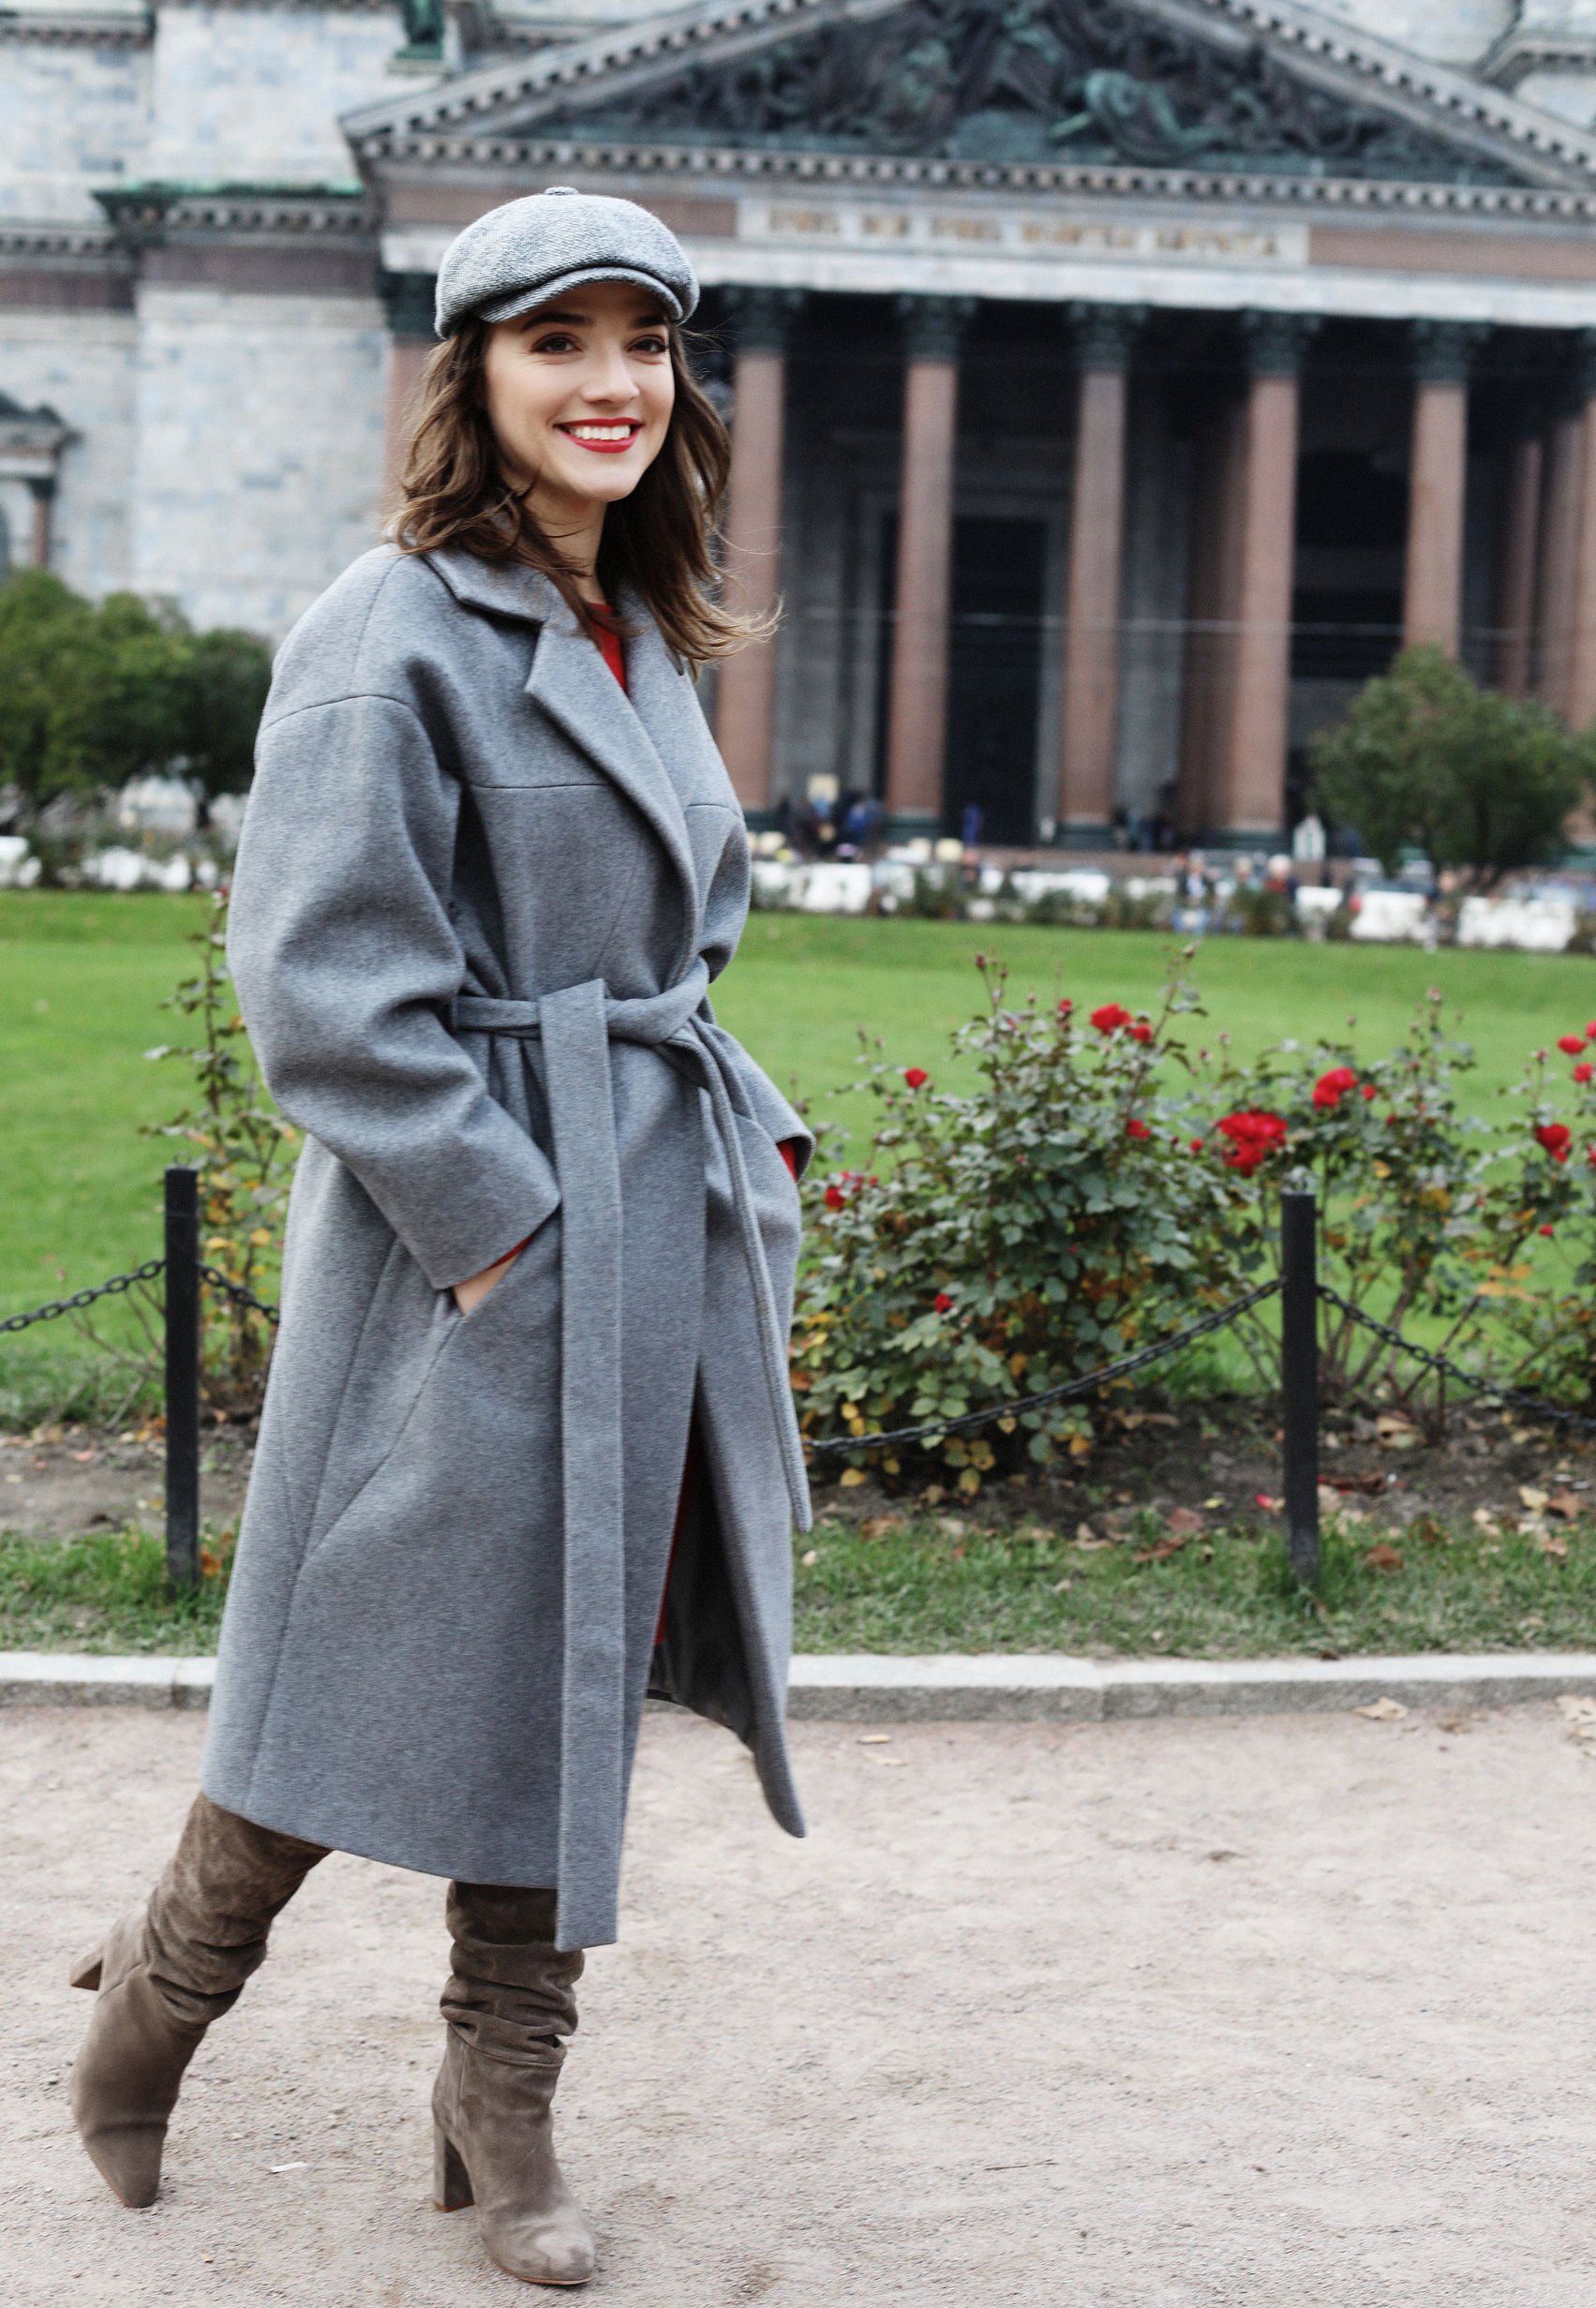 Mulher sorrindo usando casaco e botas